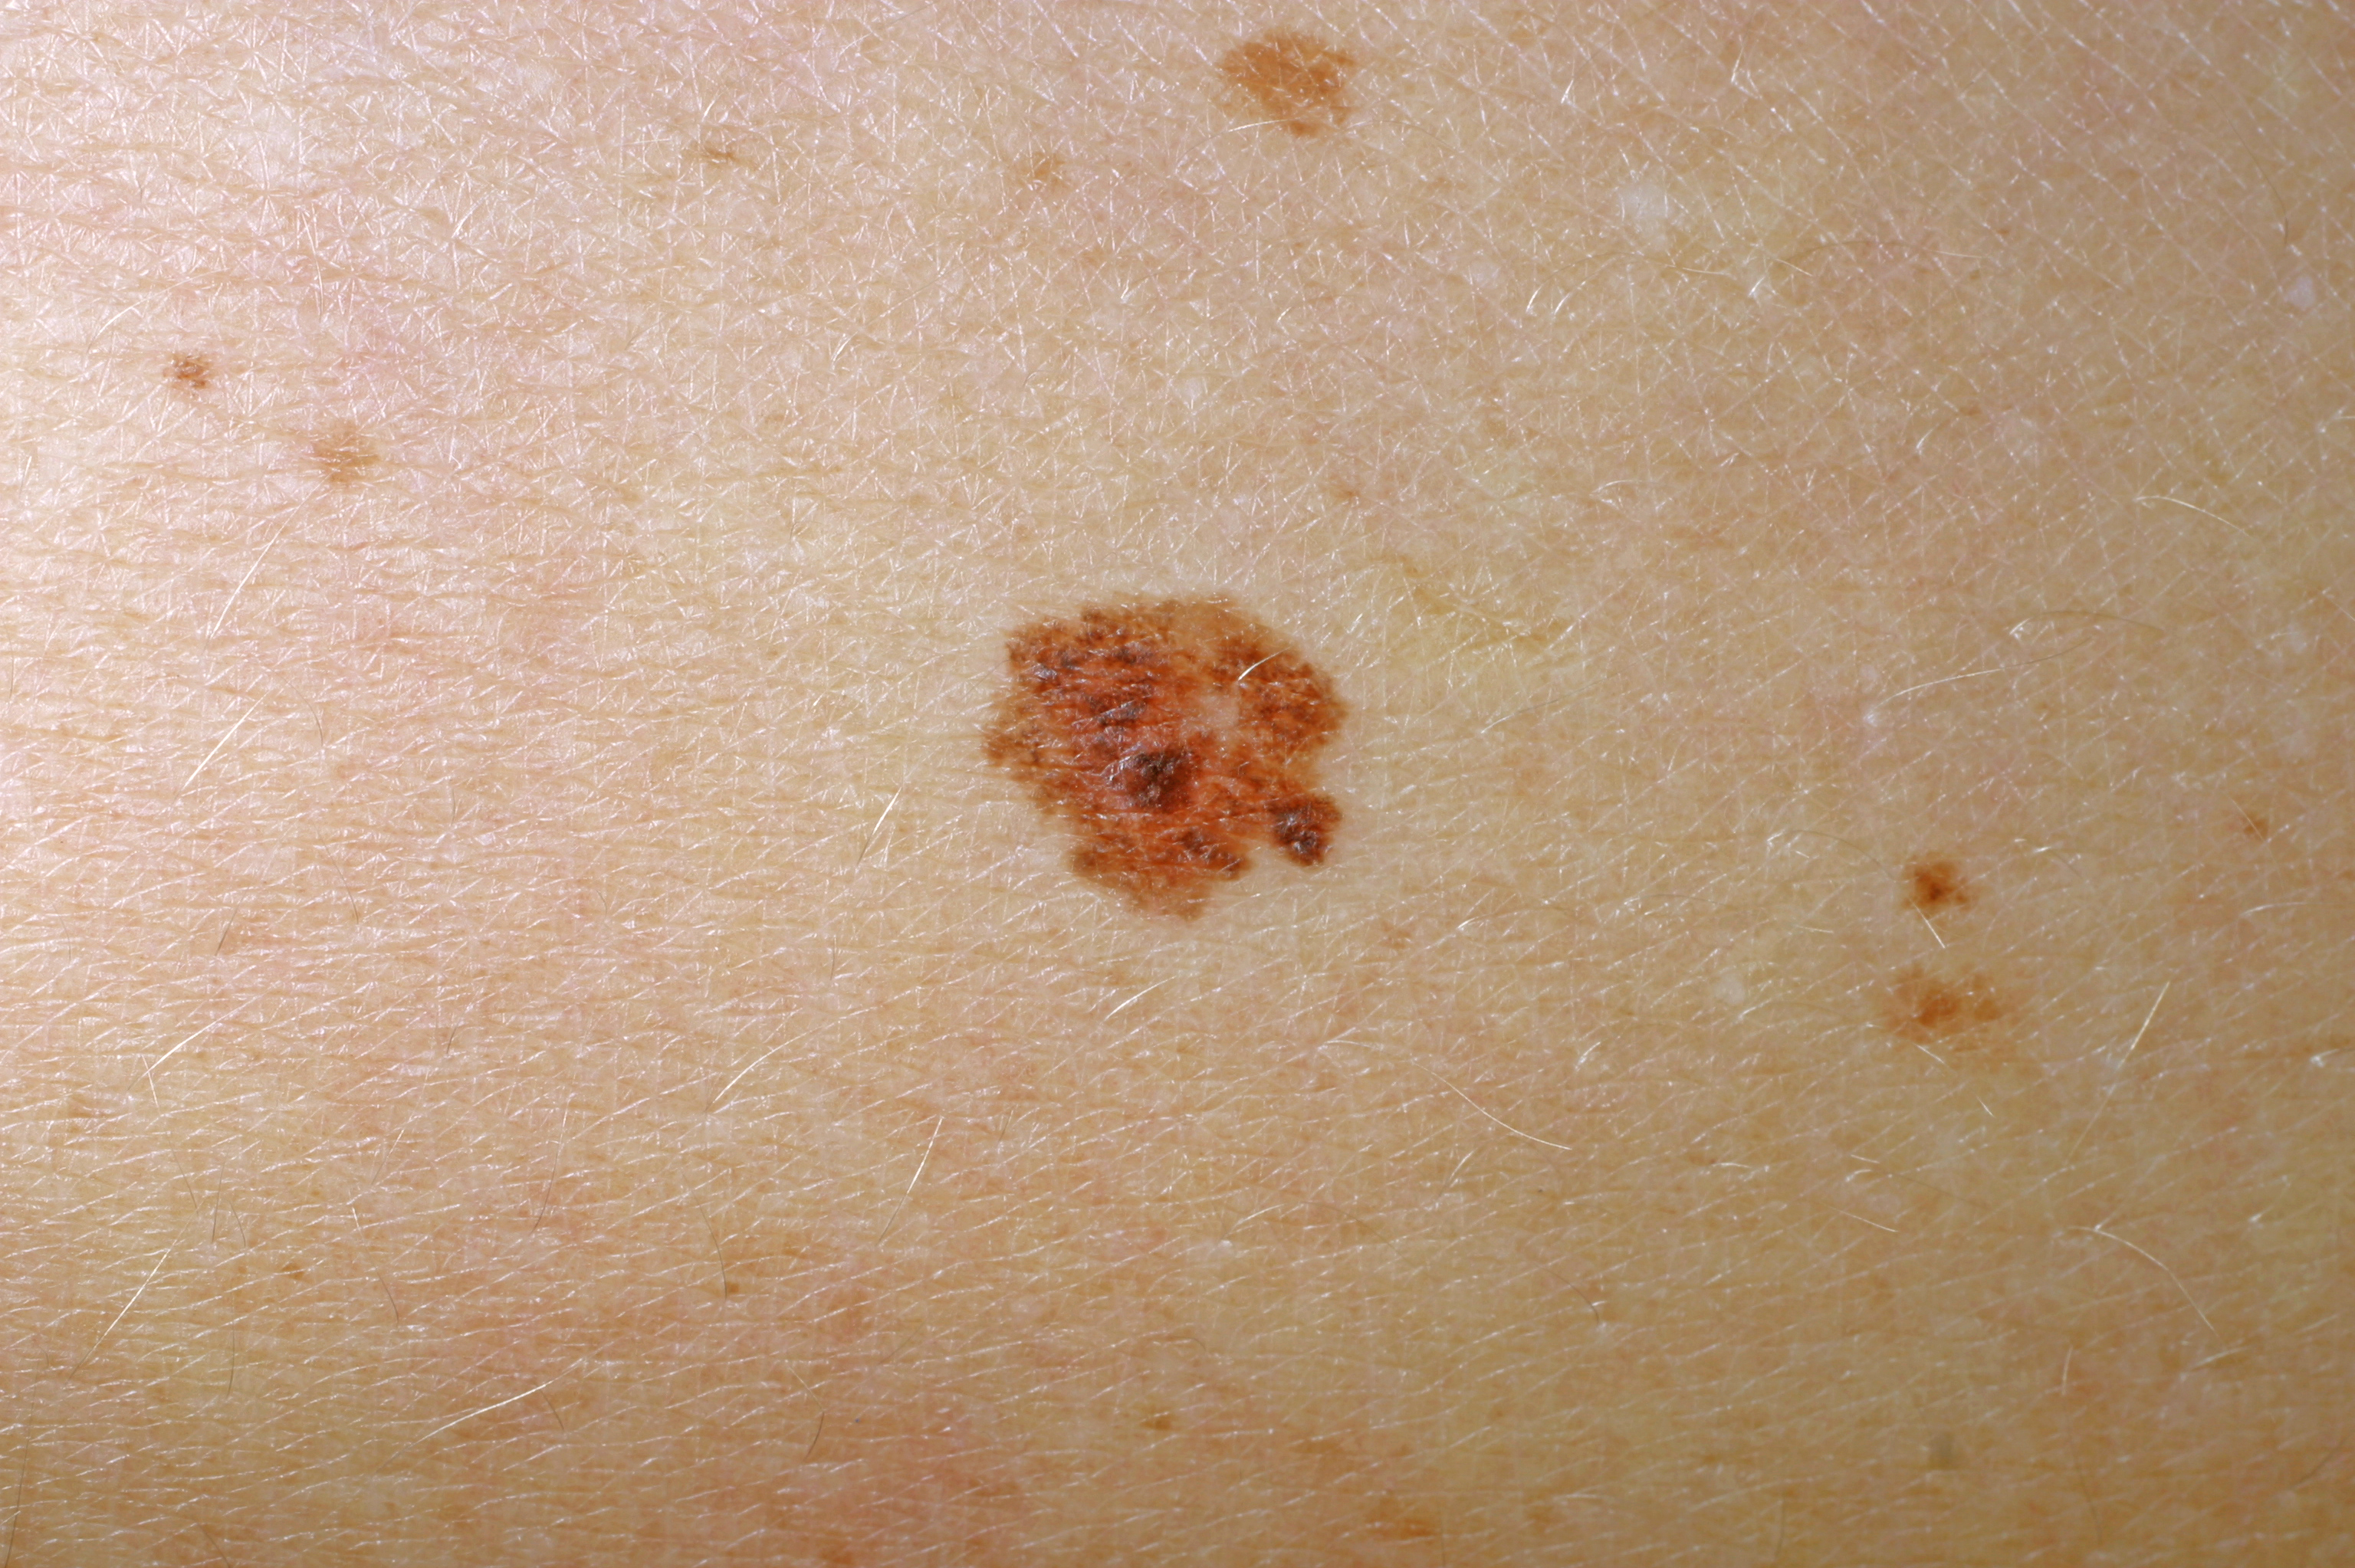 Ytligt växande maligna melanom på hud. Fotografi.